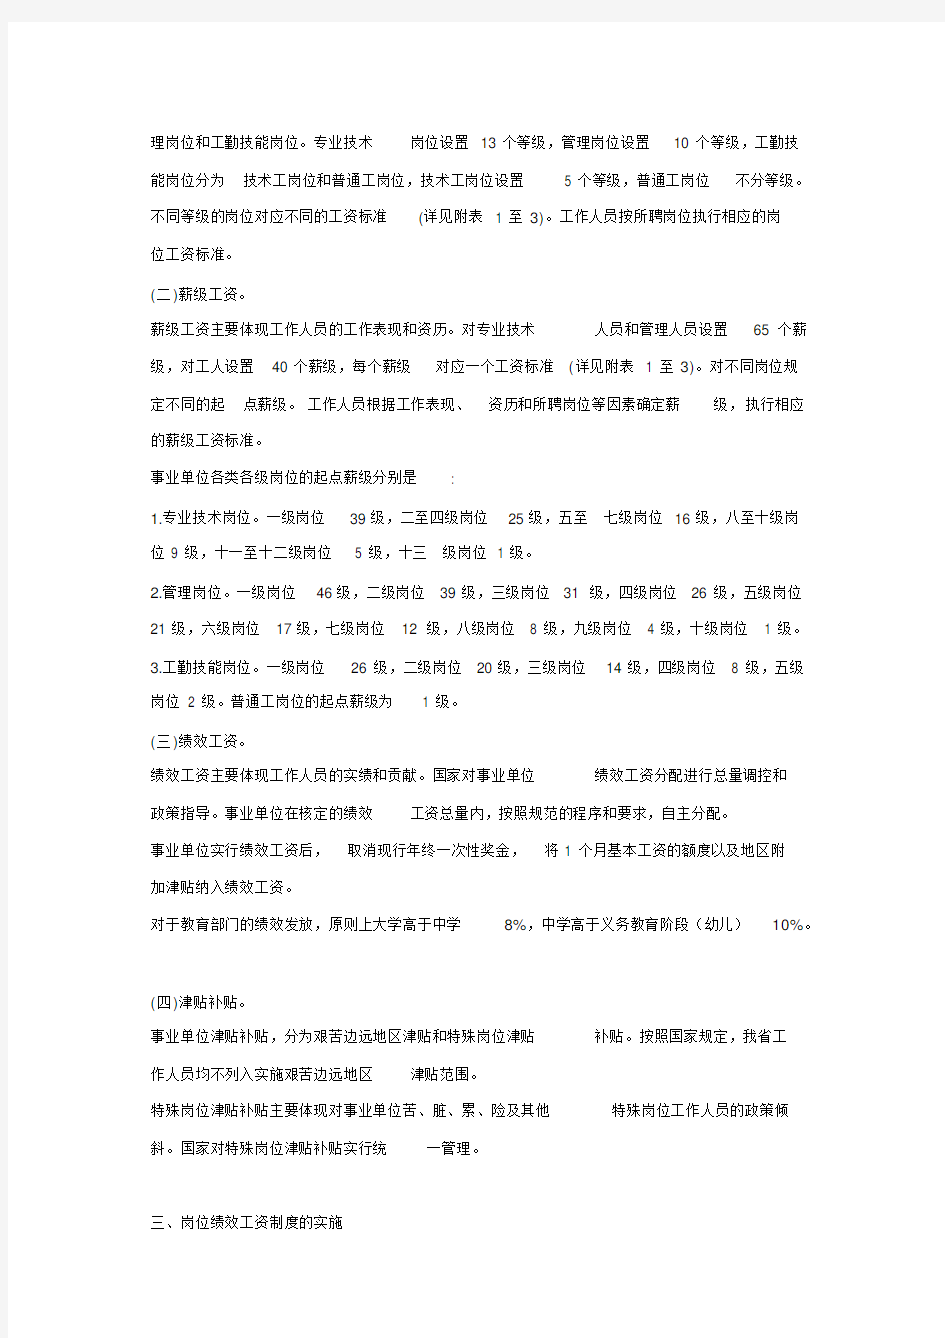 江苏省事业单位工作人员绩效工资制度改革实施意见(XX1年)